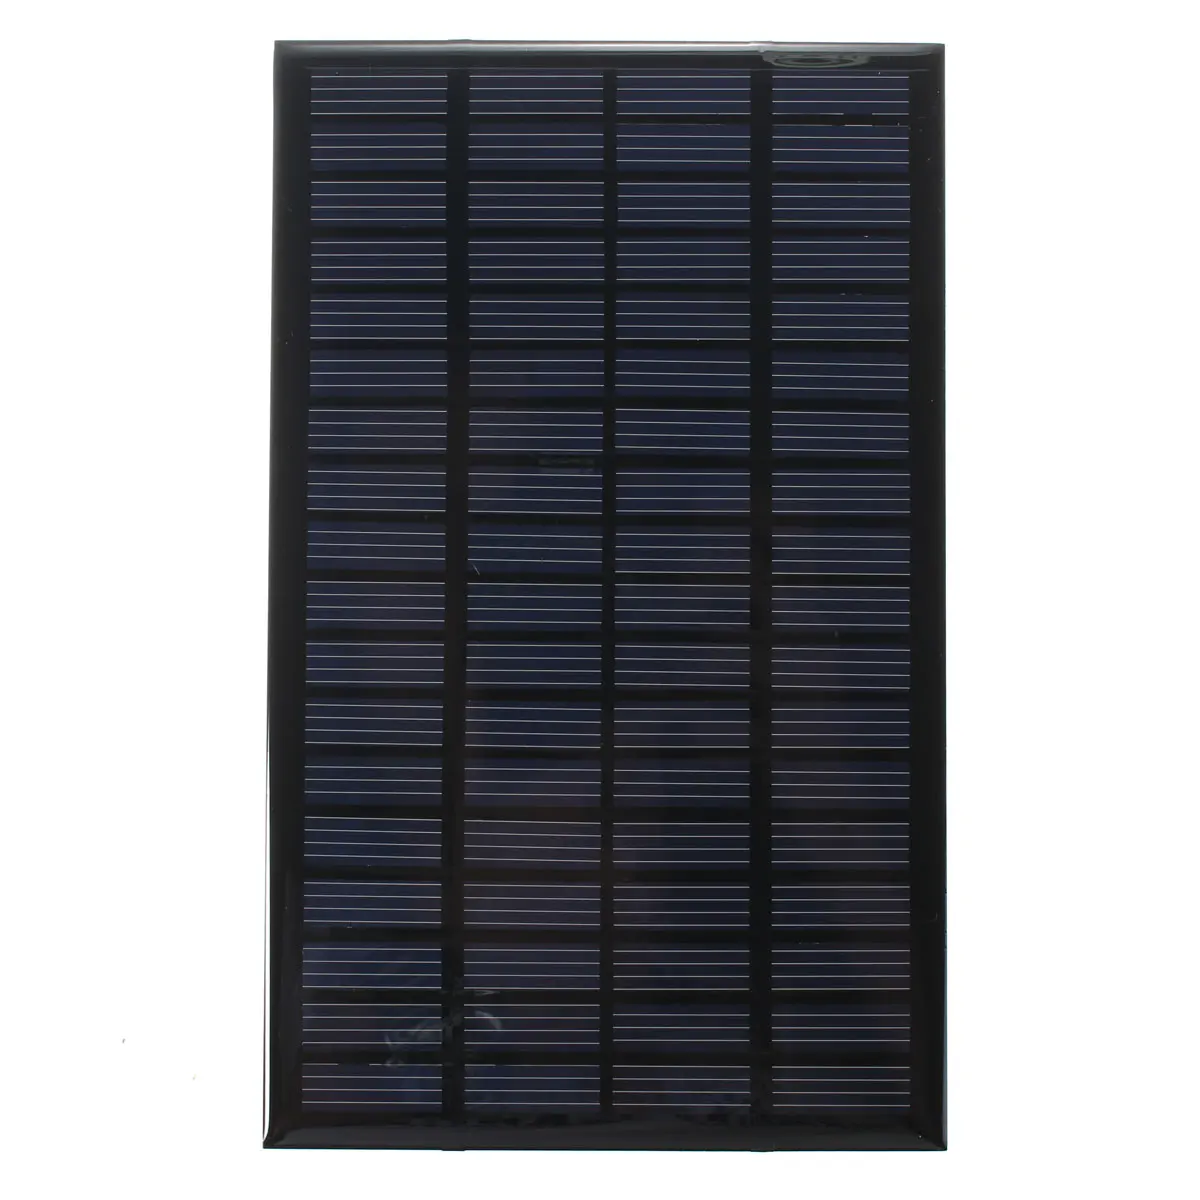 CLAITE 18 в 2,5 Вт Универсальный поликристаллический запасной энергии солнечной панели модуль системы солнечных батарей зарядное устройство 19,4x12x0,3 см